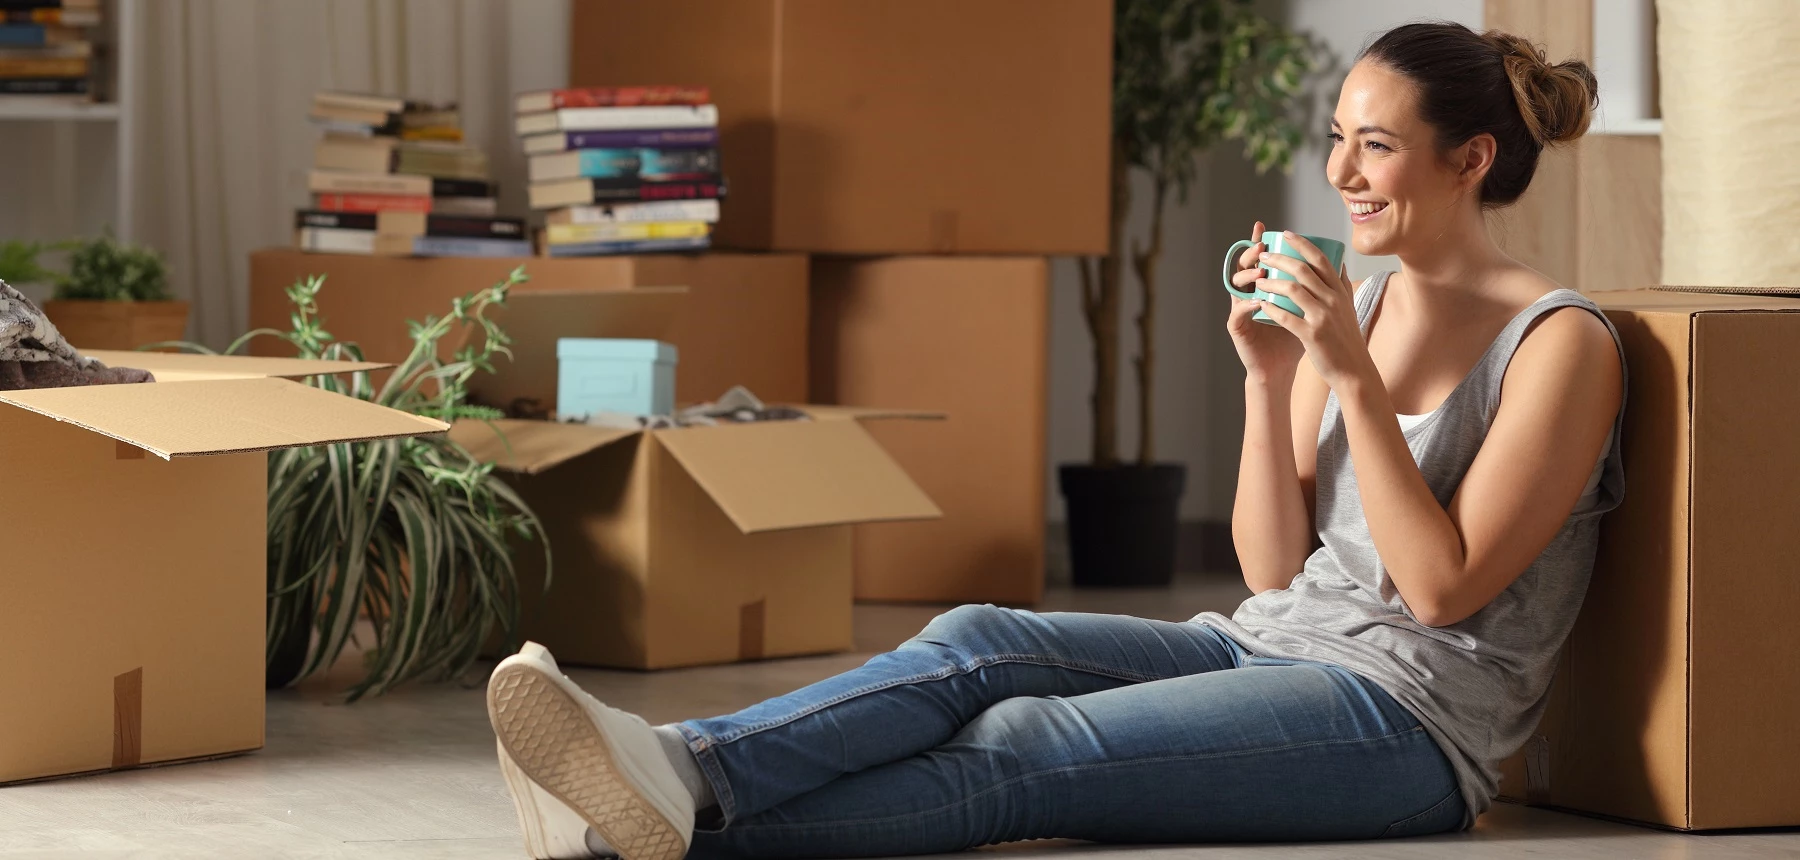 Femme assise contre des cartons de déménagement